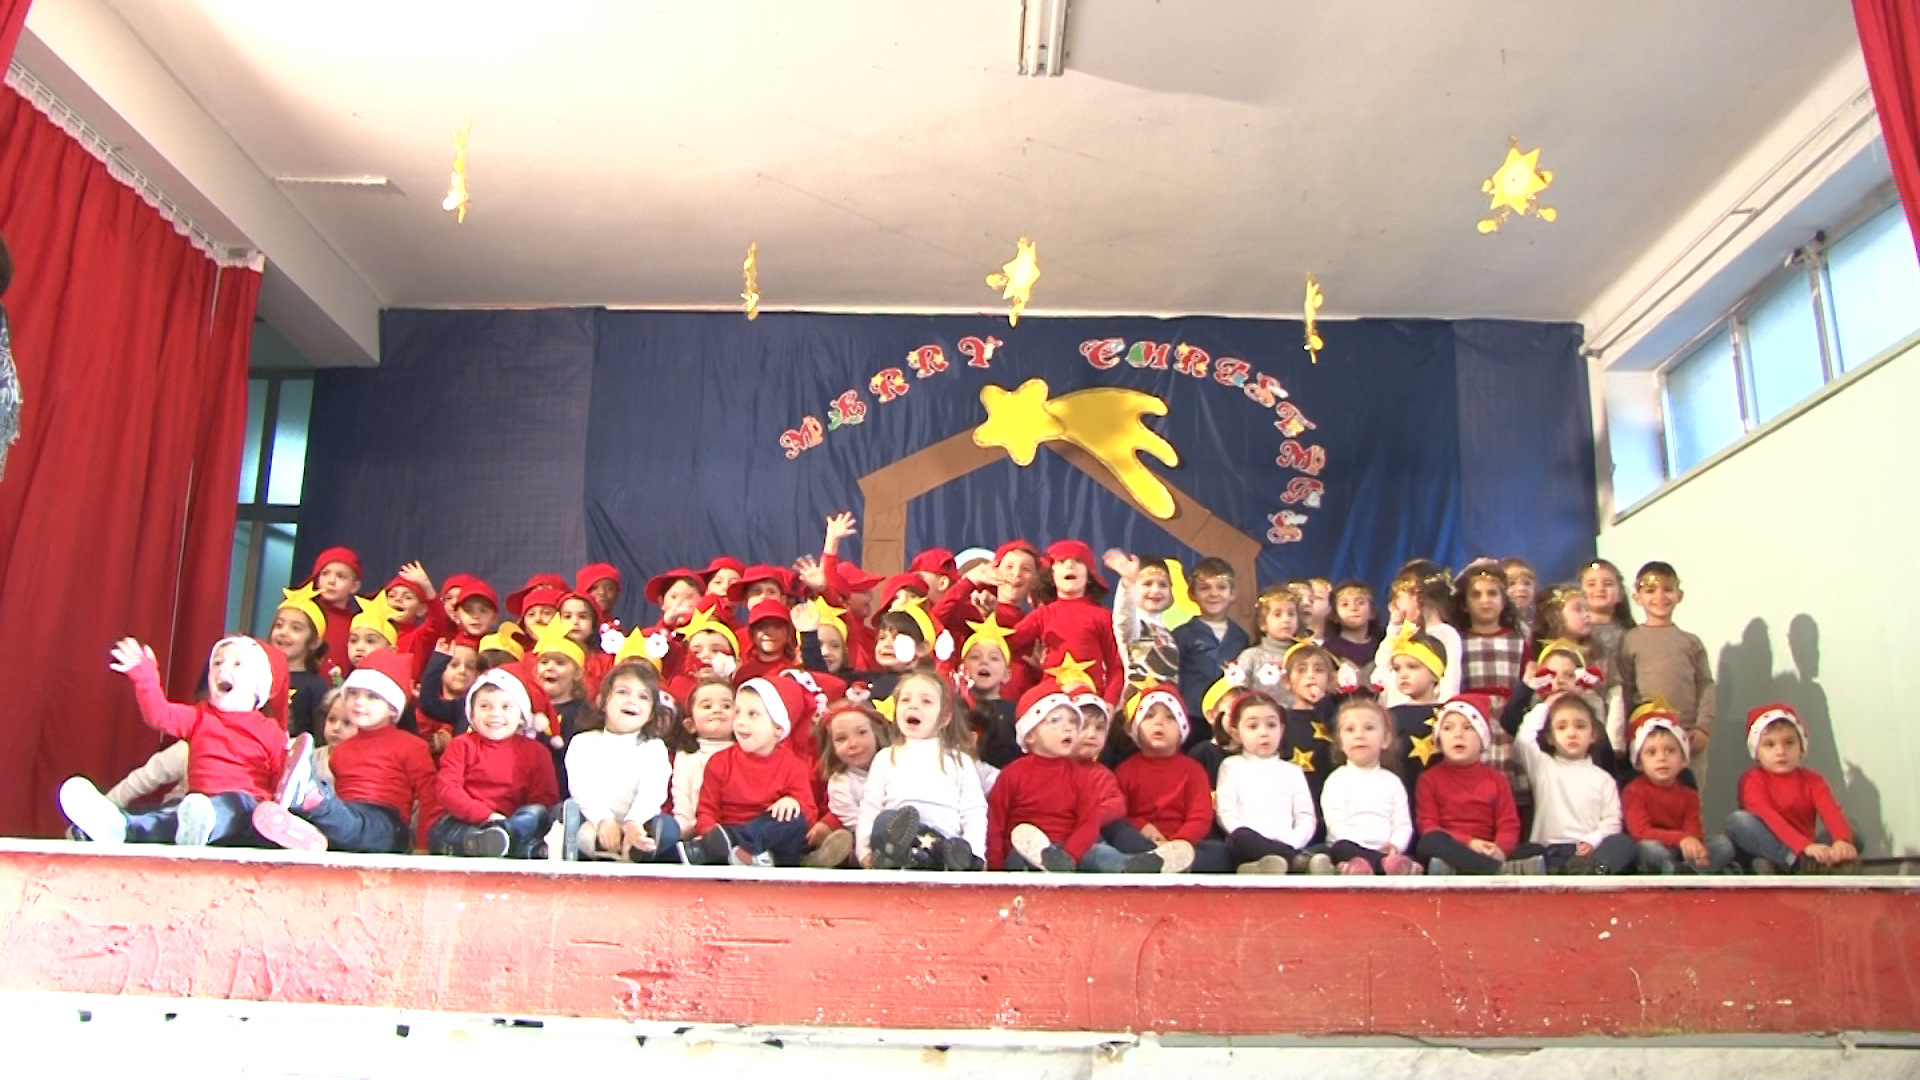  Piccoli attori crescono: recita di Natale della Scuola “E.Pistelli” di Pianura – VIDEO